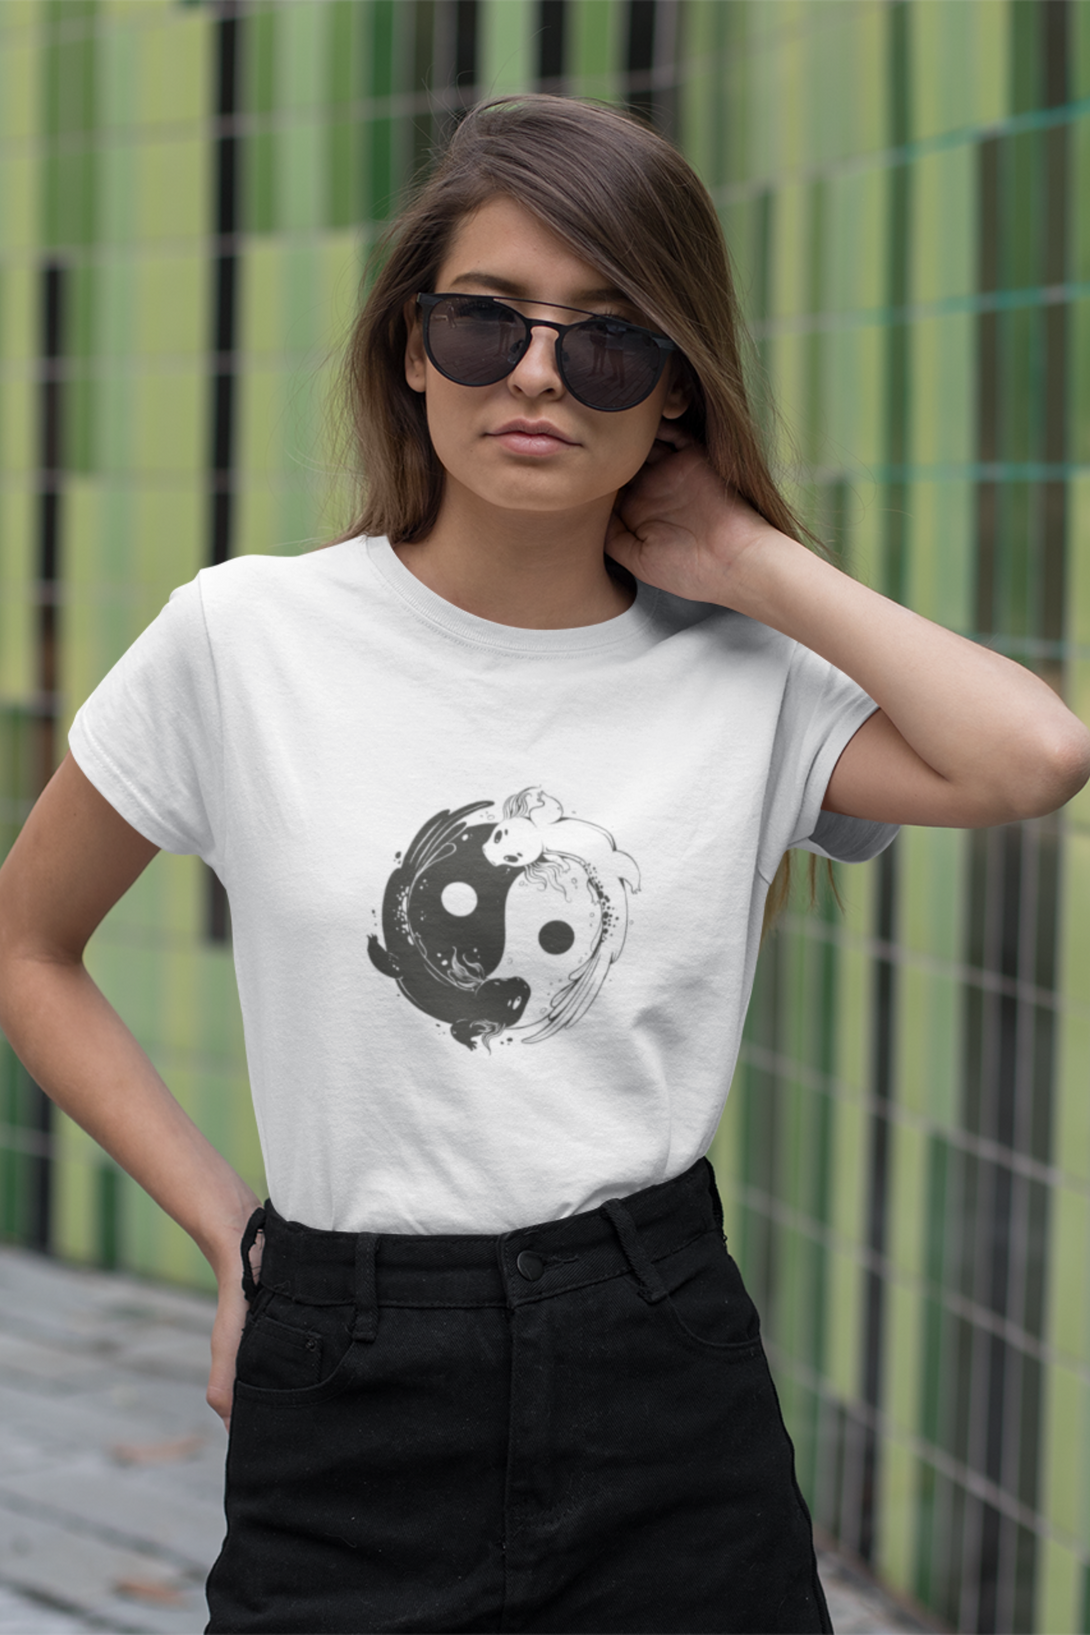 Yin Yang Axolotl Printed T-Shirt For Women - WowWaves - 5